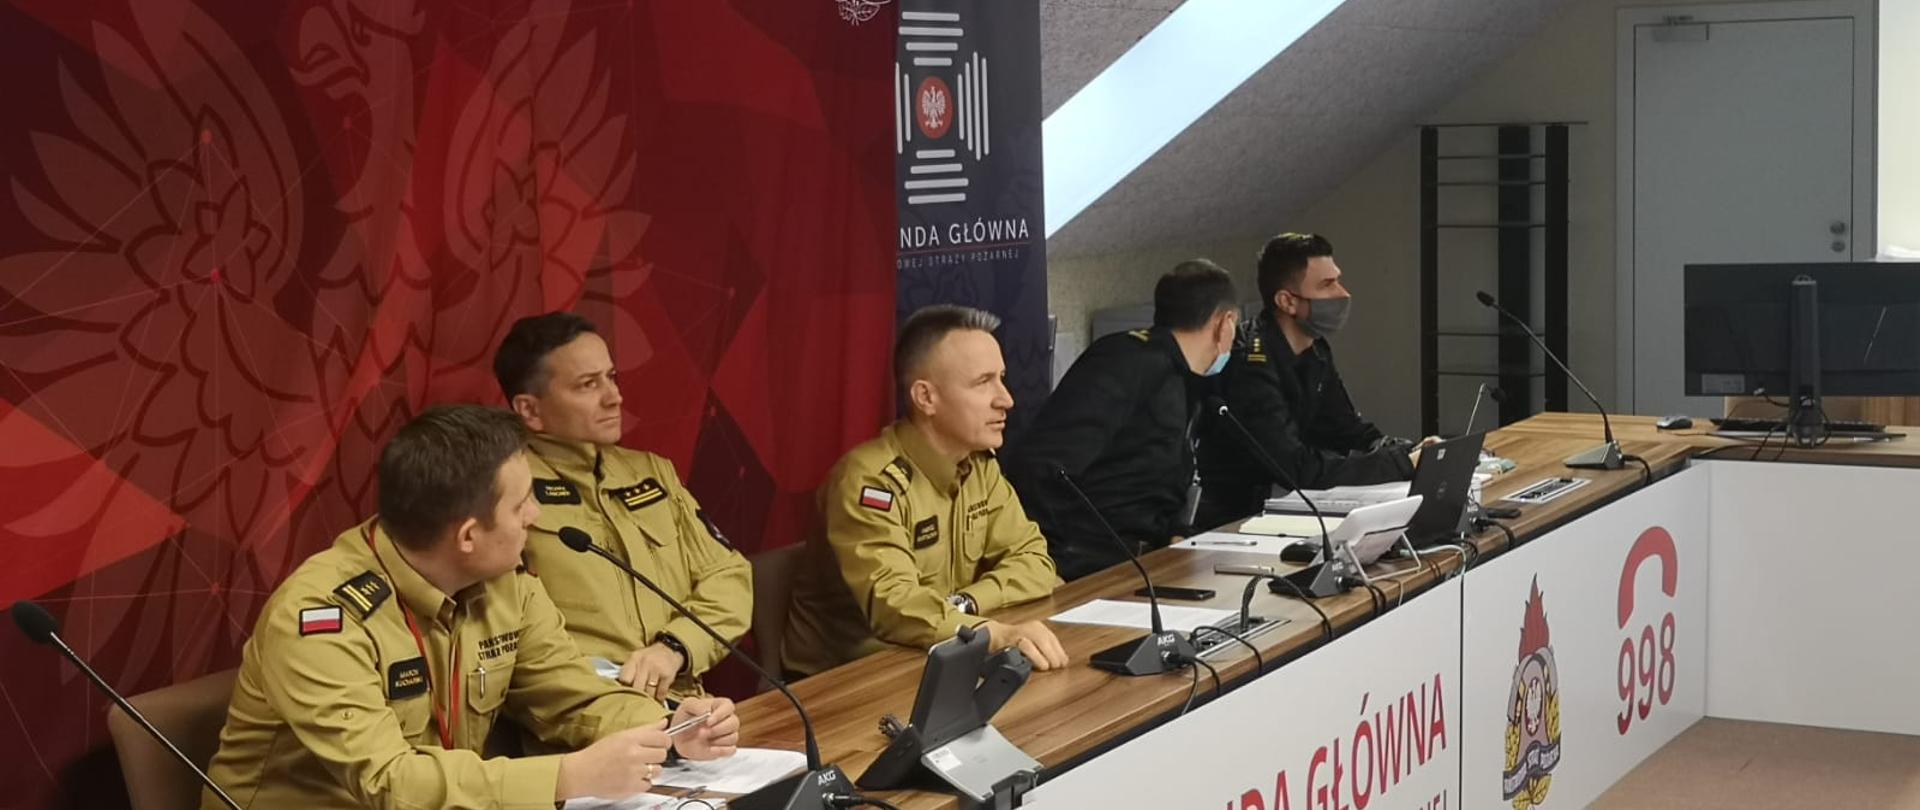 5 strażaków w umundurowaniu , (w środku komendant główny PSP) siedzą przy biurku podczas wideokonferencji, za nimi ustawione ścianki z wizerunkiem godła Polski oraz logotypu KG PSP